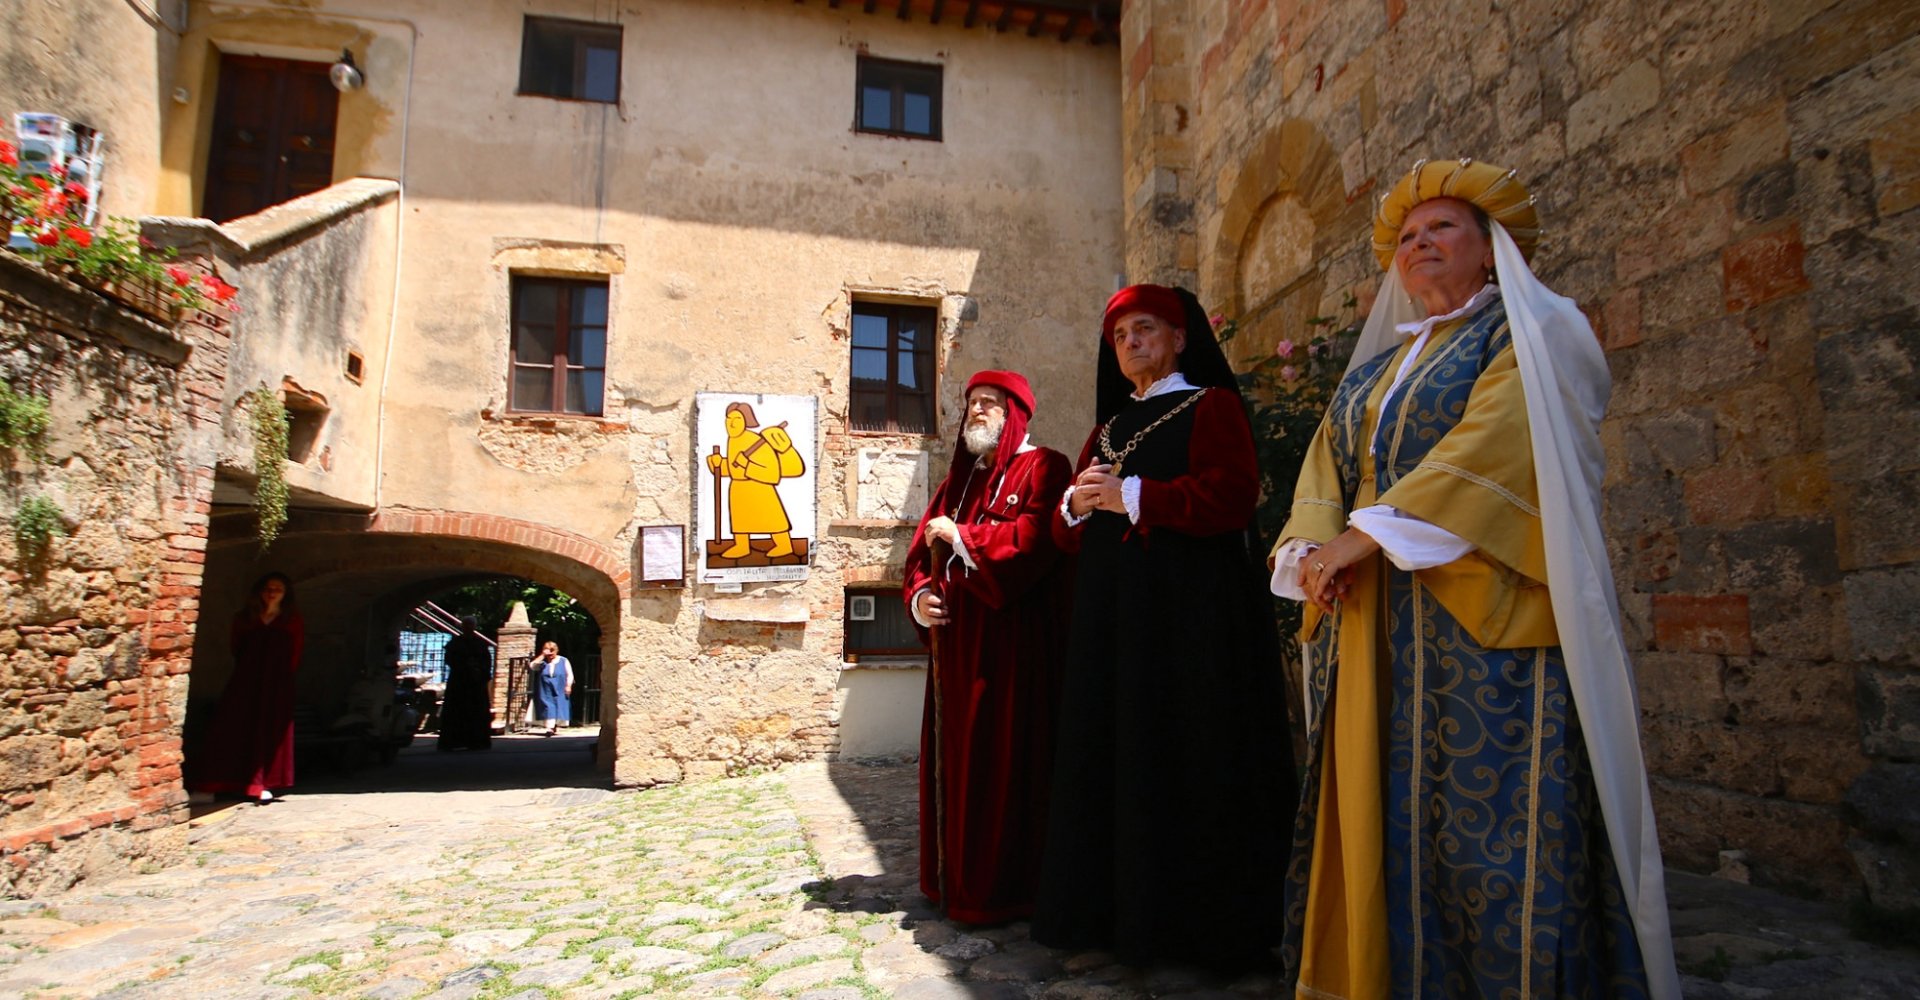 Medieval Feast in Monteriggioni